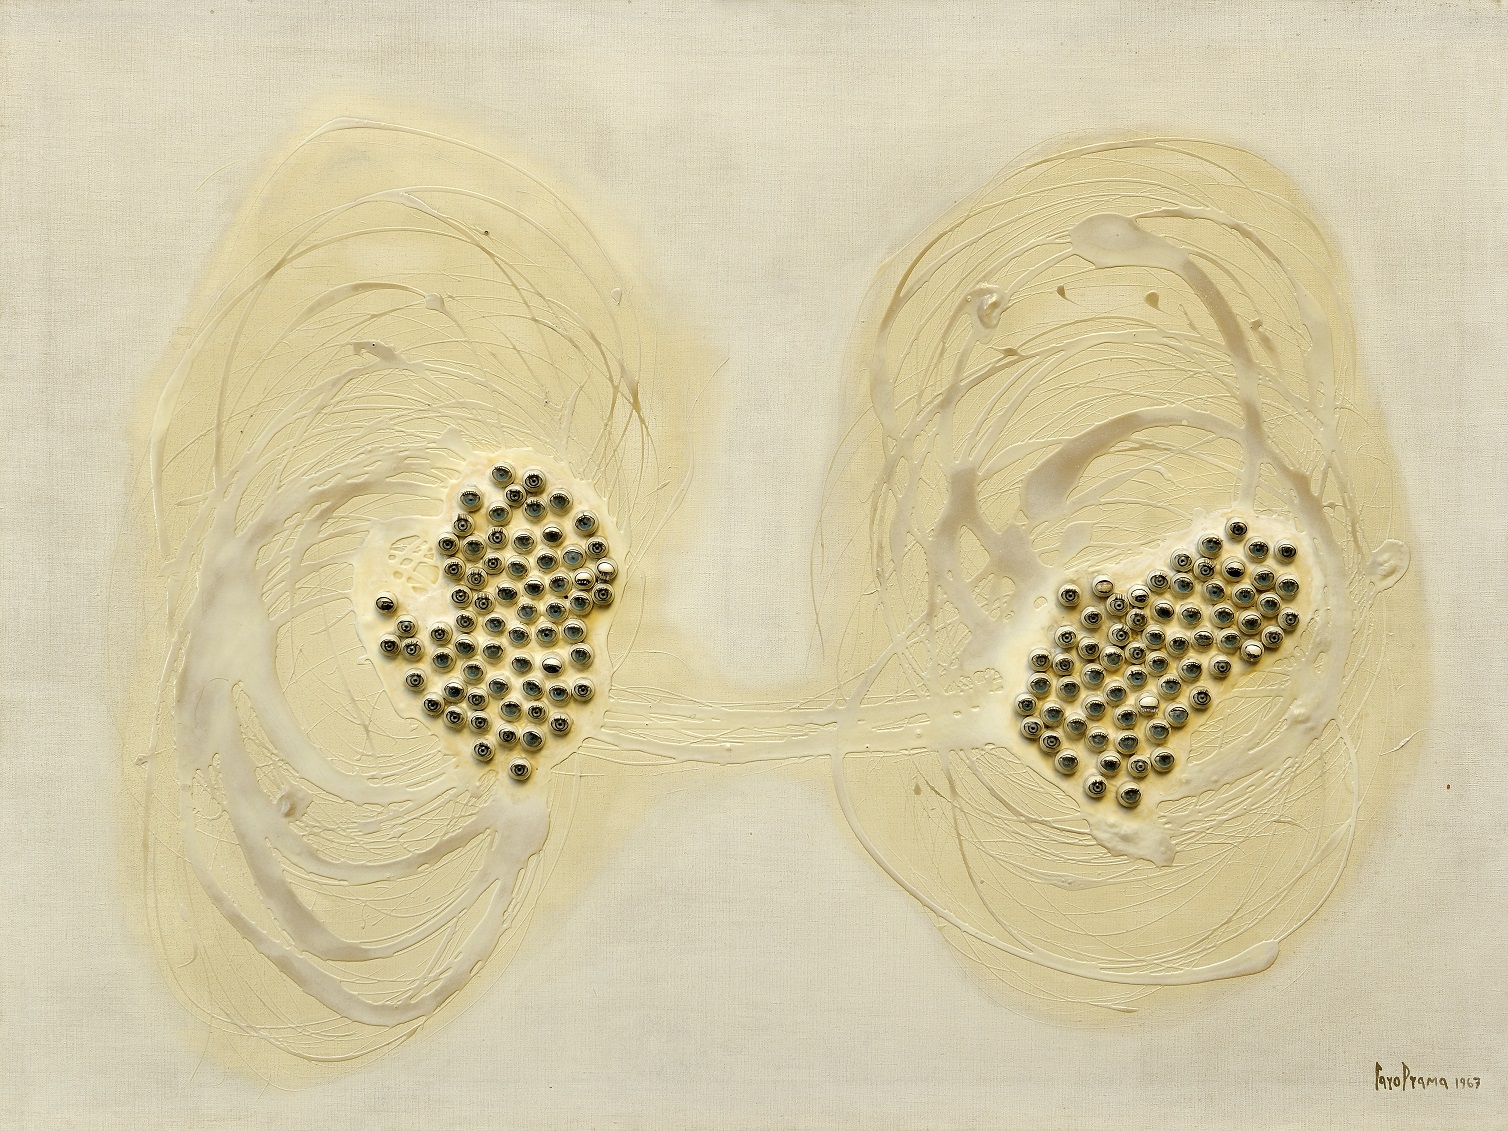 Carol Rama Lisola degli occhi 1967 Occhi di plastica resina sintetica e smalto su tela 120 x 160 cm collezione privata